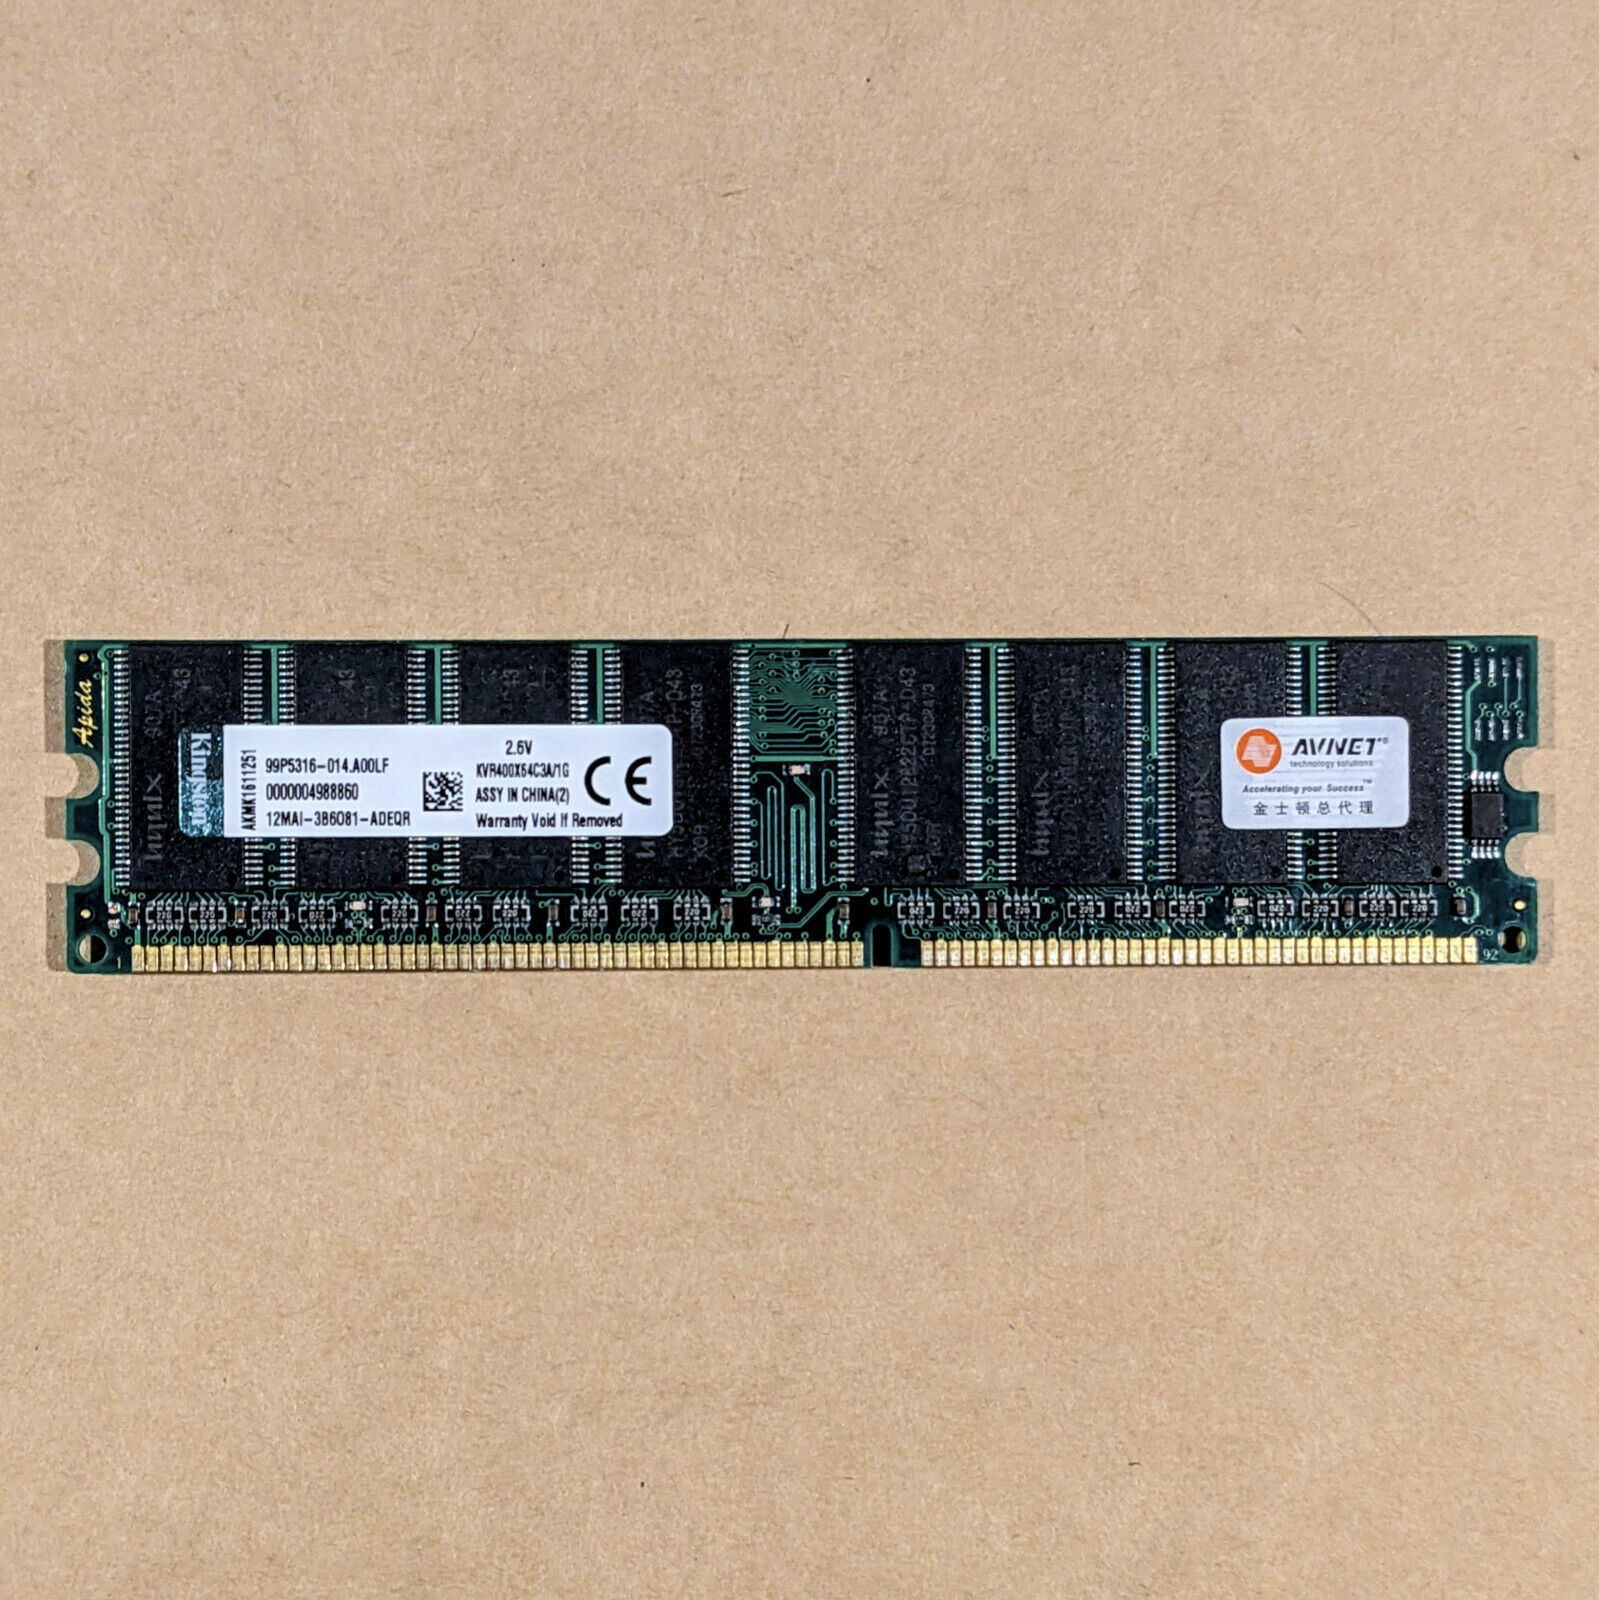 🔧 (×1) 1GB DDR1 Kingston Memory / RAM @400MHz [TESTED | FOR DESKTOPS]